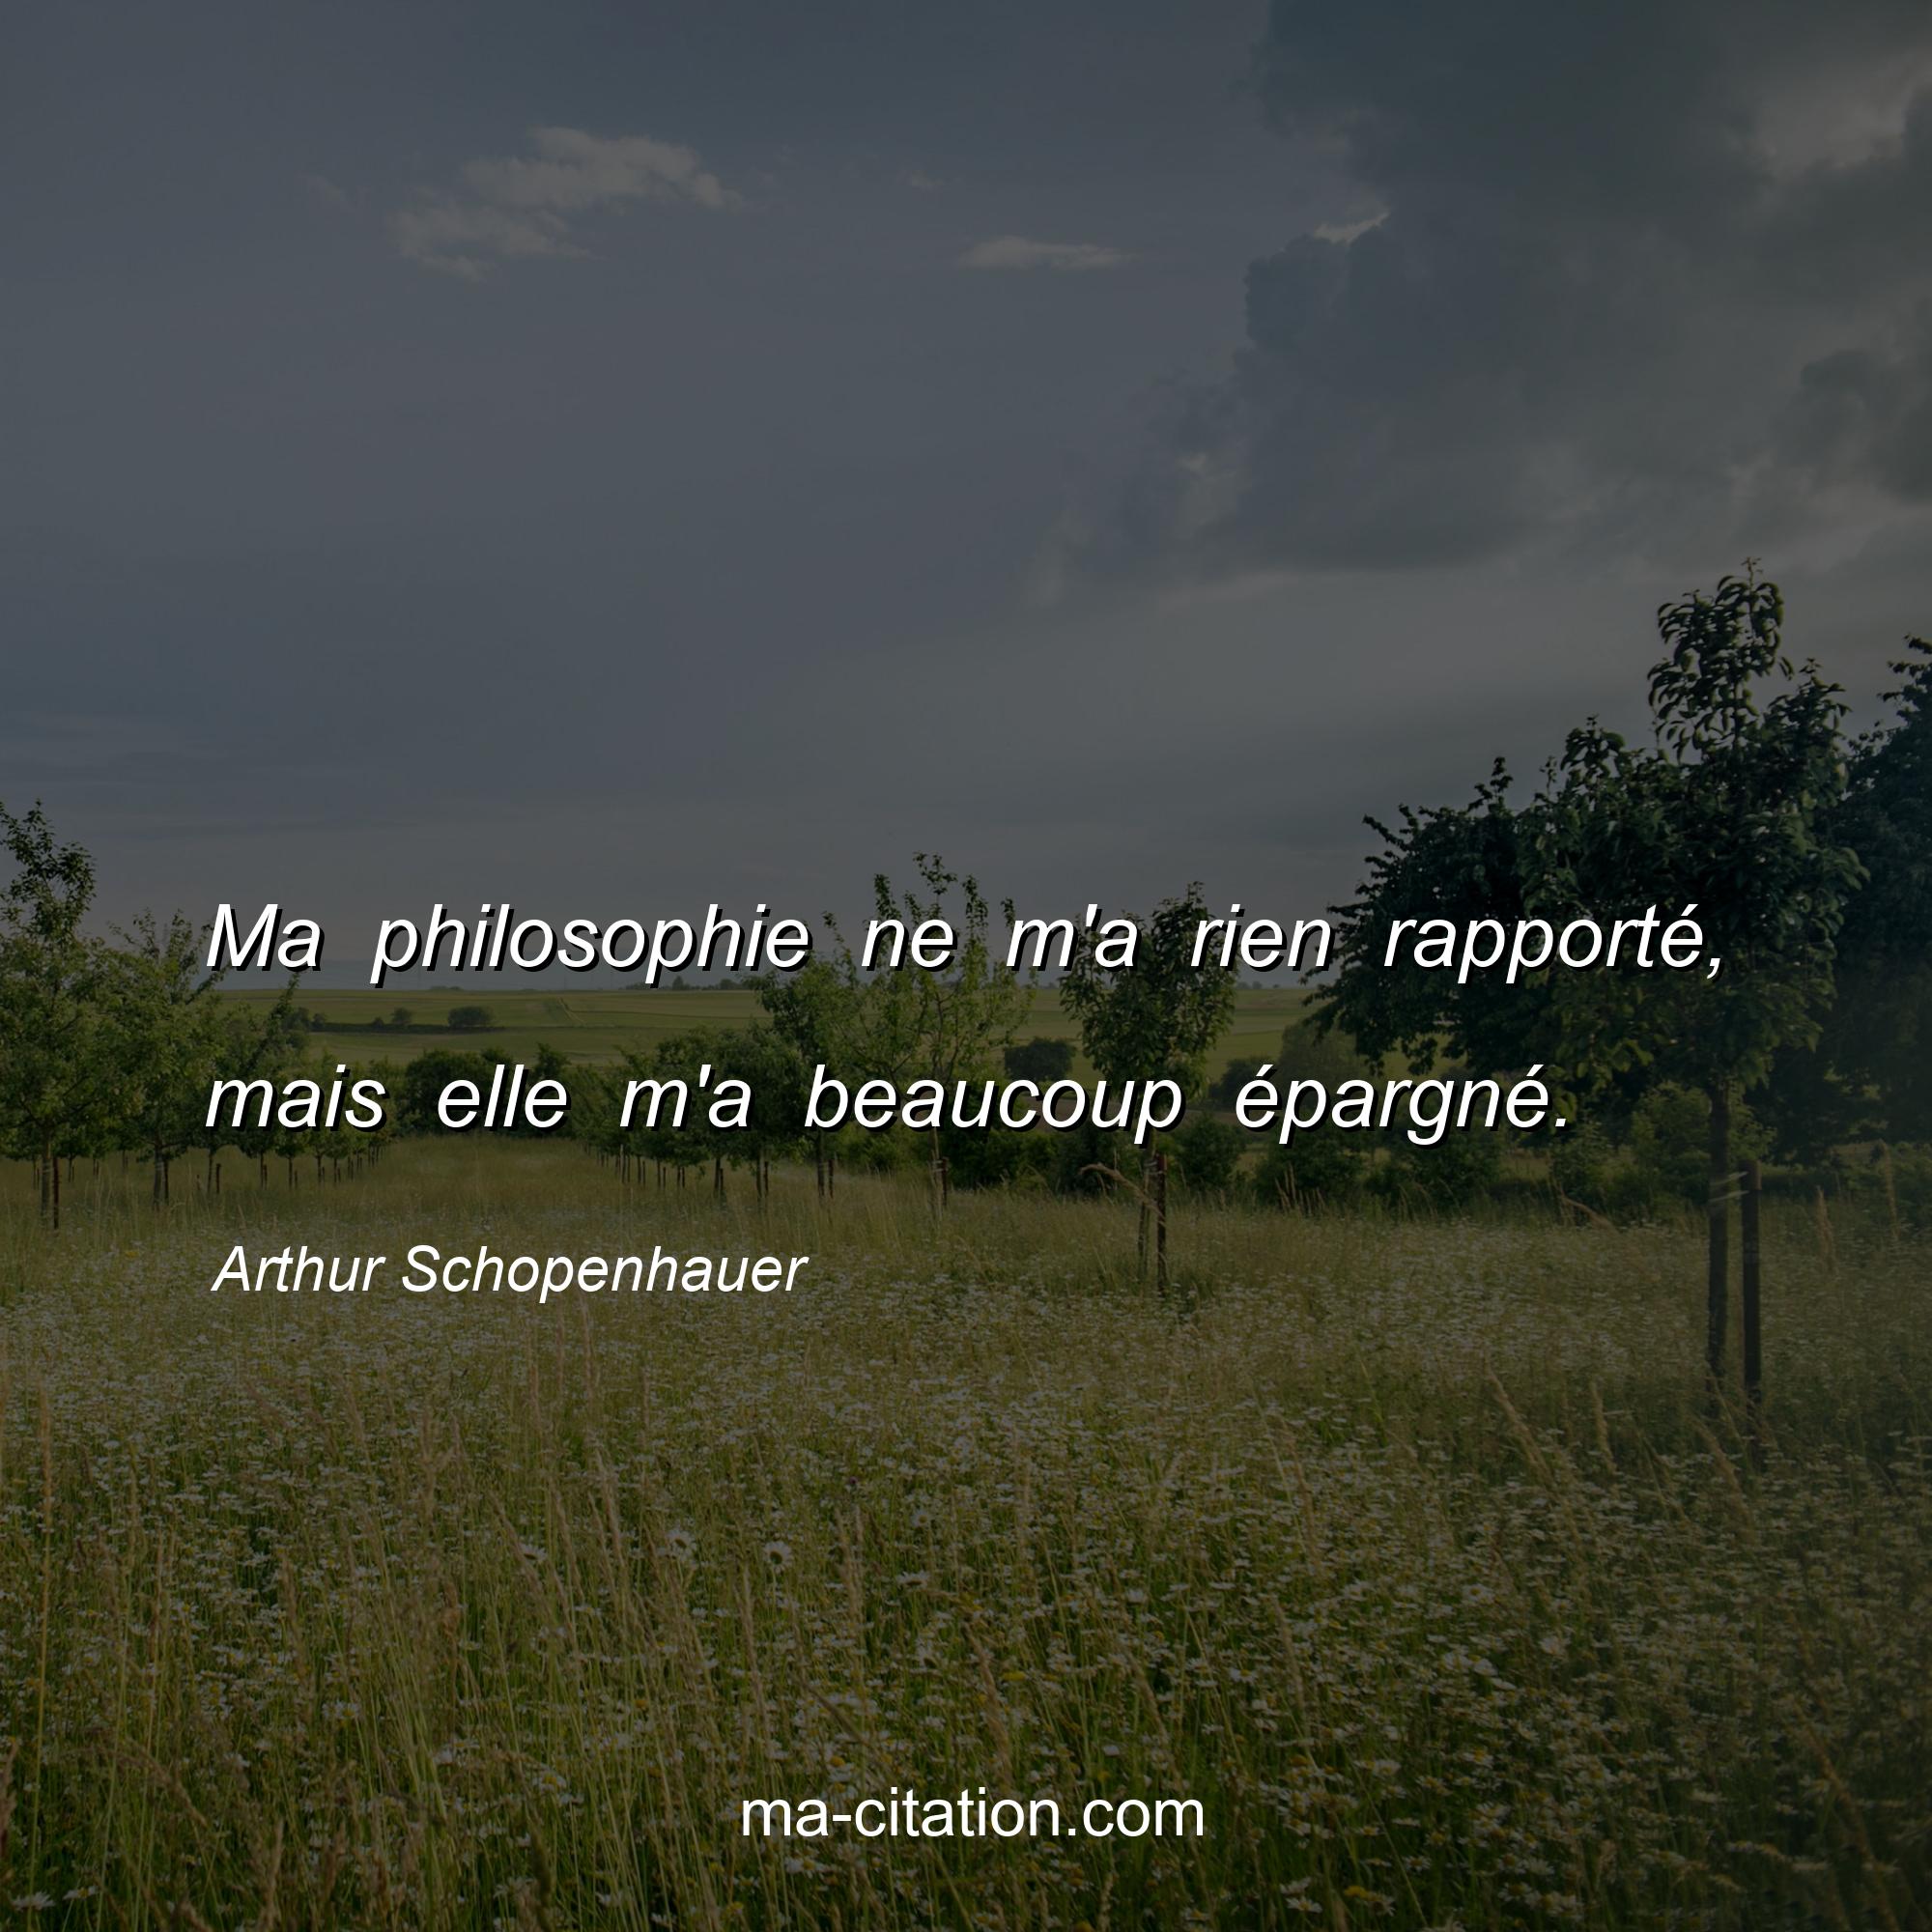 Arthur Schopenhauer : Ma philosophie ne m'a rien rapporté, mais elle m'a beaucoup épargné.